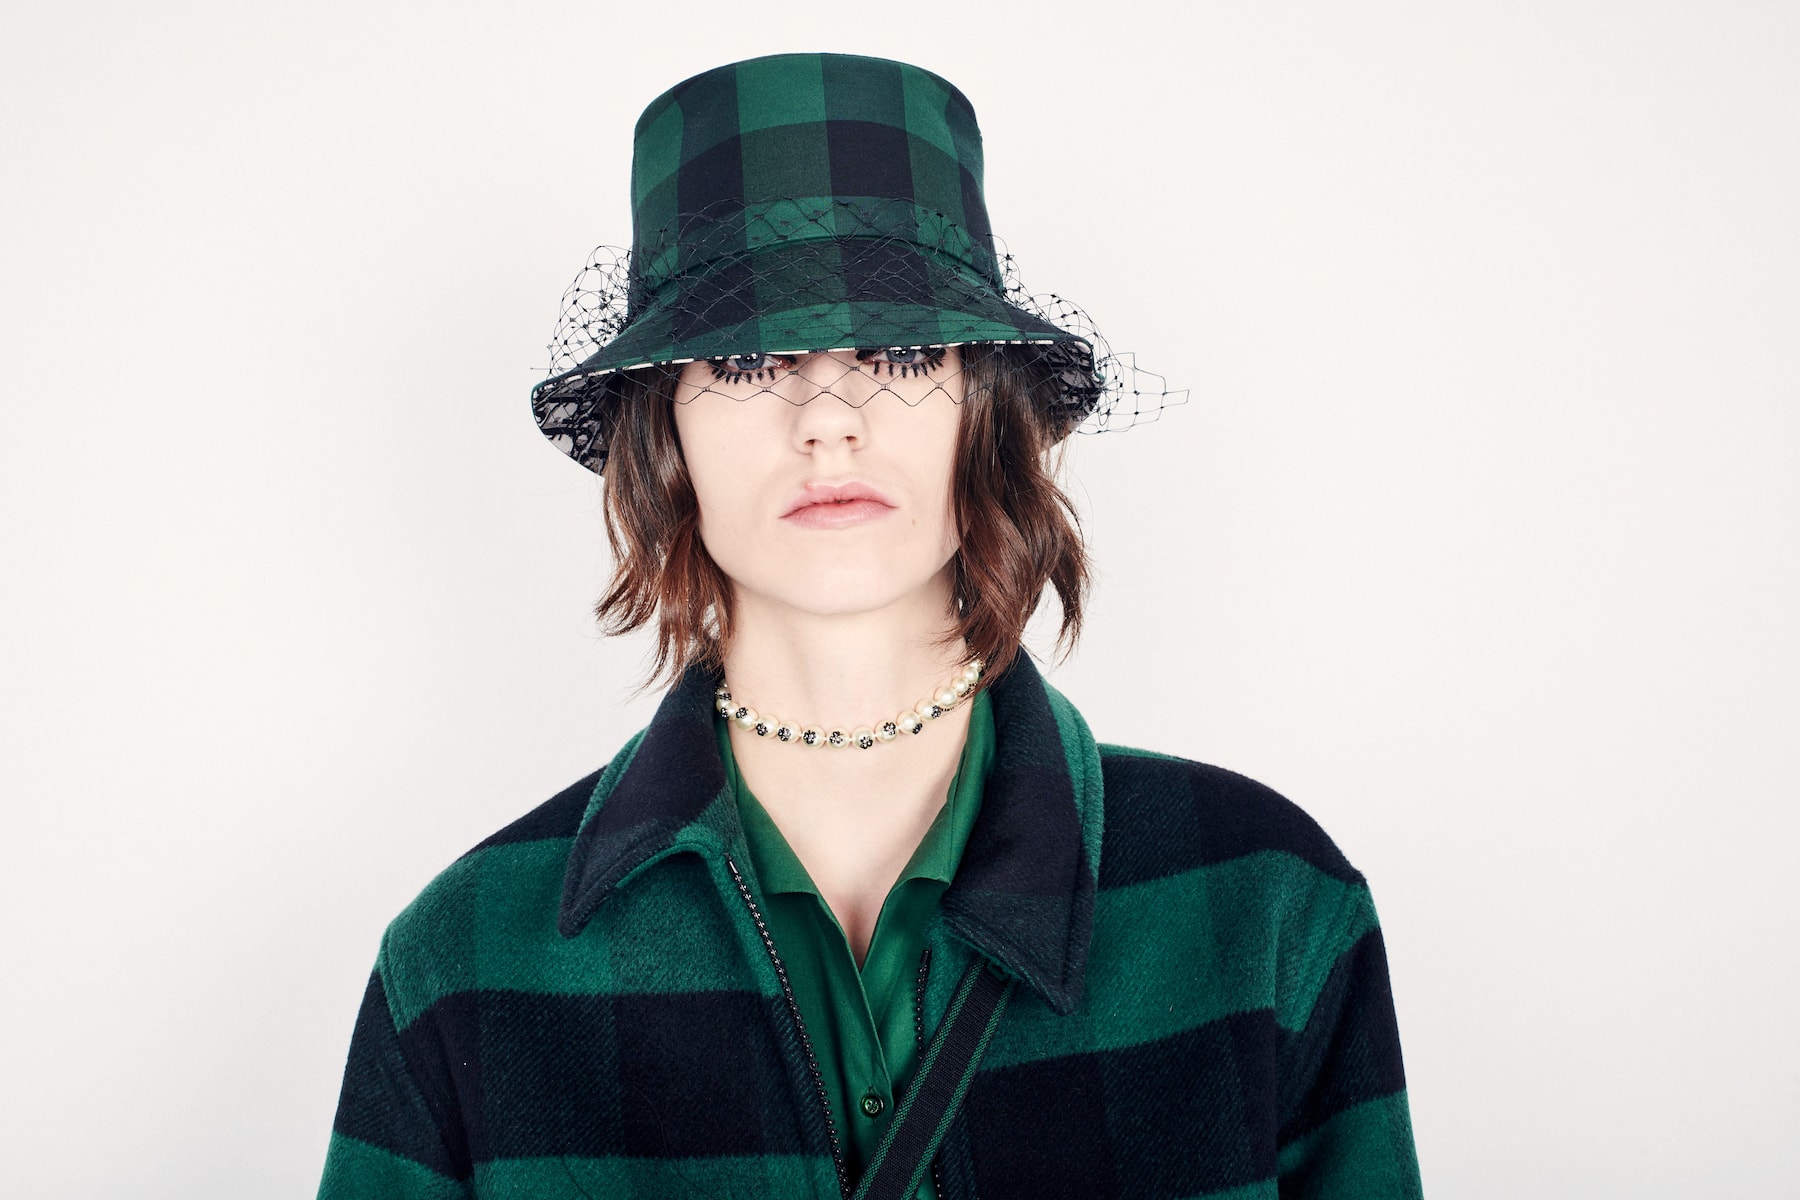 Dior Monogram Bucket Hats Fall/Winter 2019 Drop Maria Grazia Chiuri Accessories Hat Stephen Jones FW 19 Collection